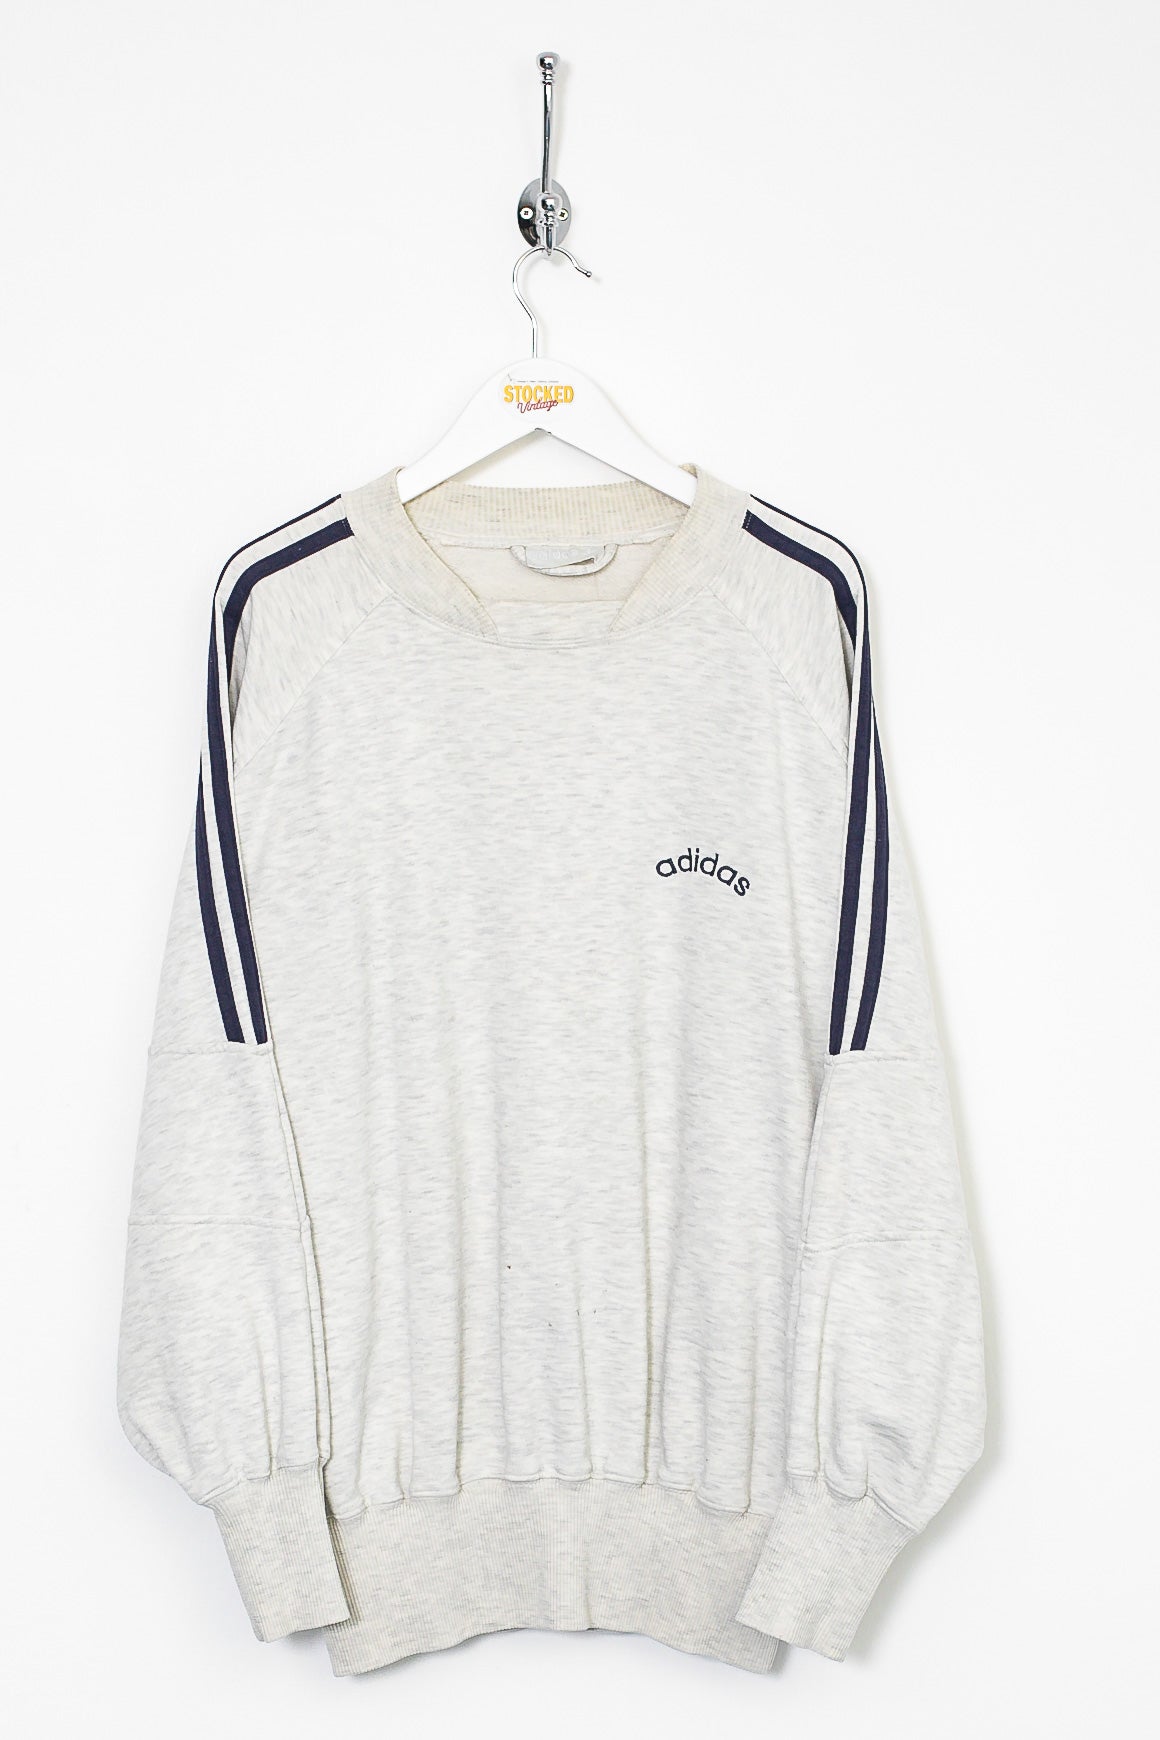 90s Adidas Sweatshirt (XL)